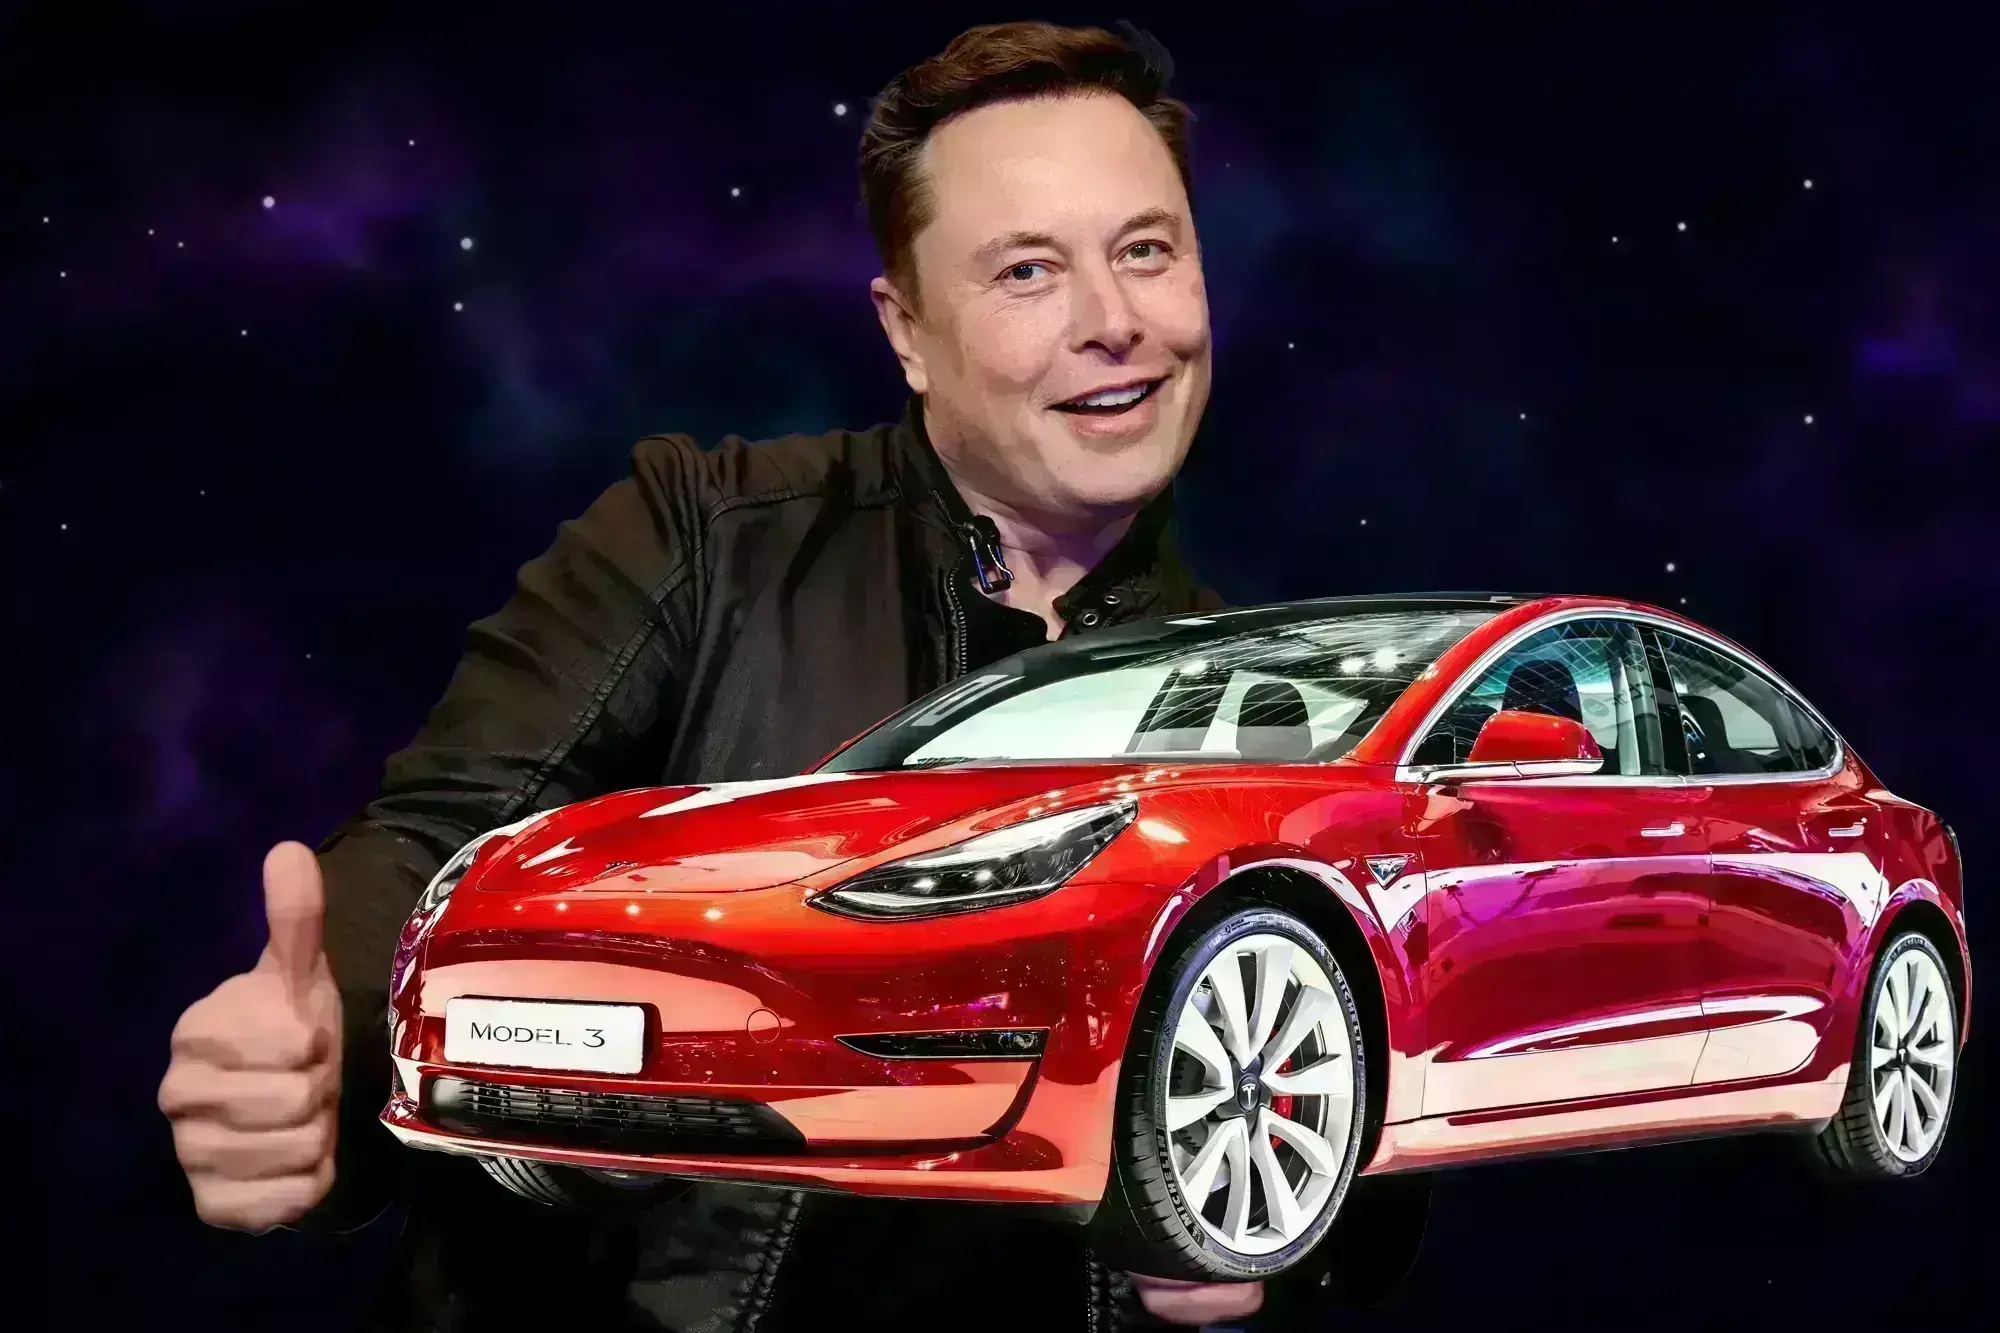 टेस्ला भारतात खरंच इलेलक्ट्रिक कार लॉन्च करतंय का? । Tesla Electric Cars